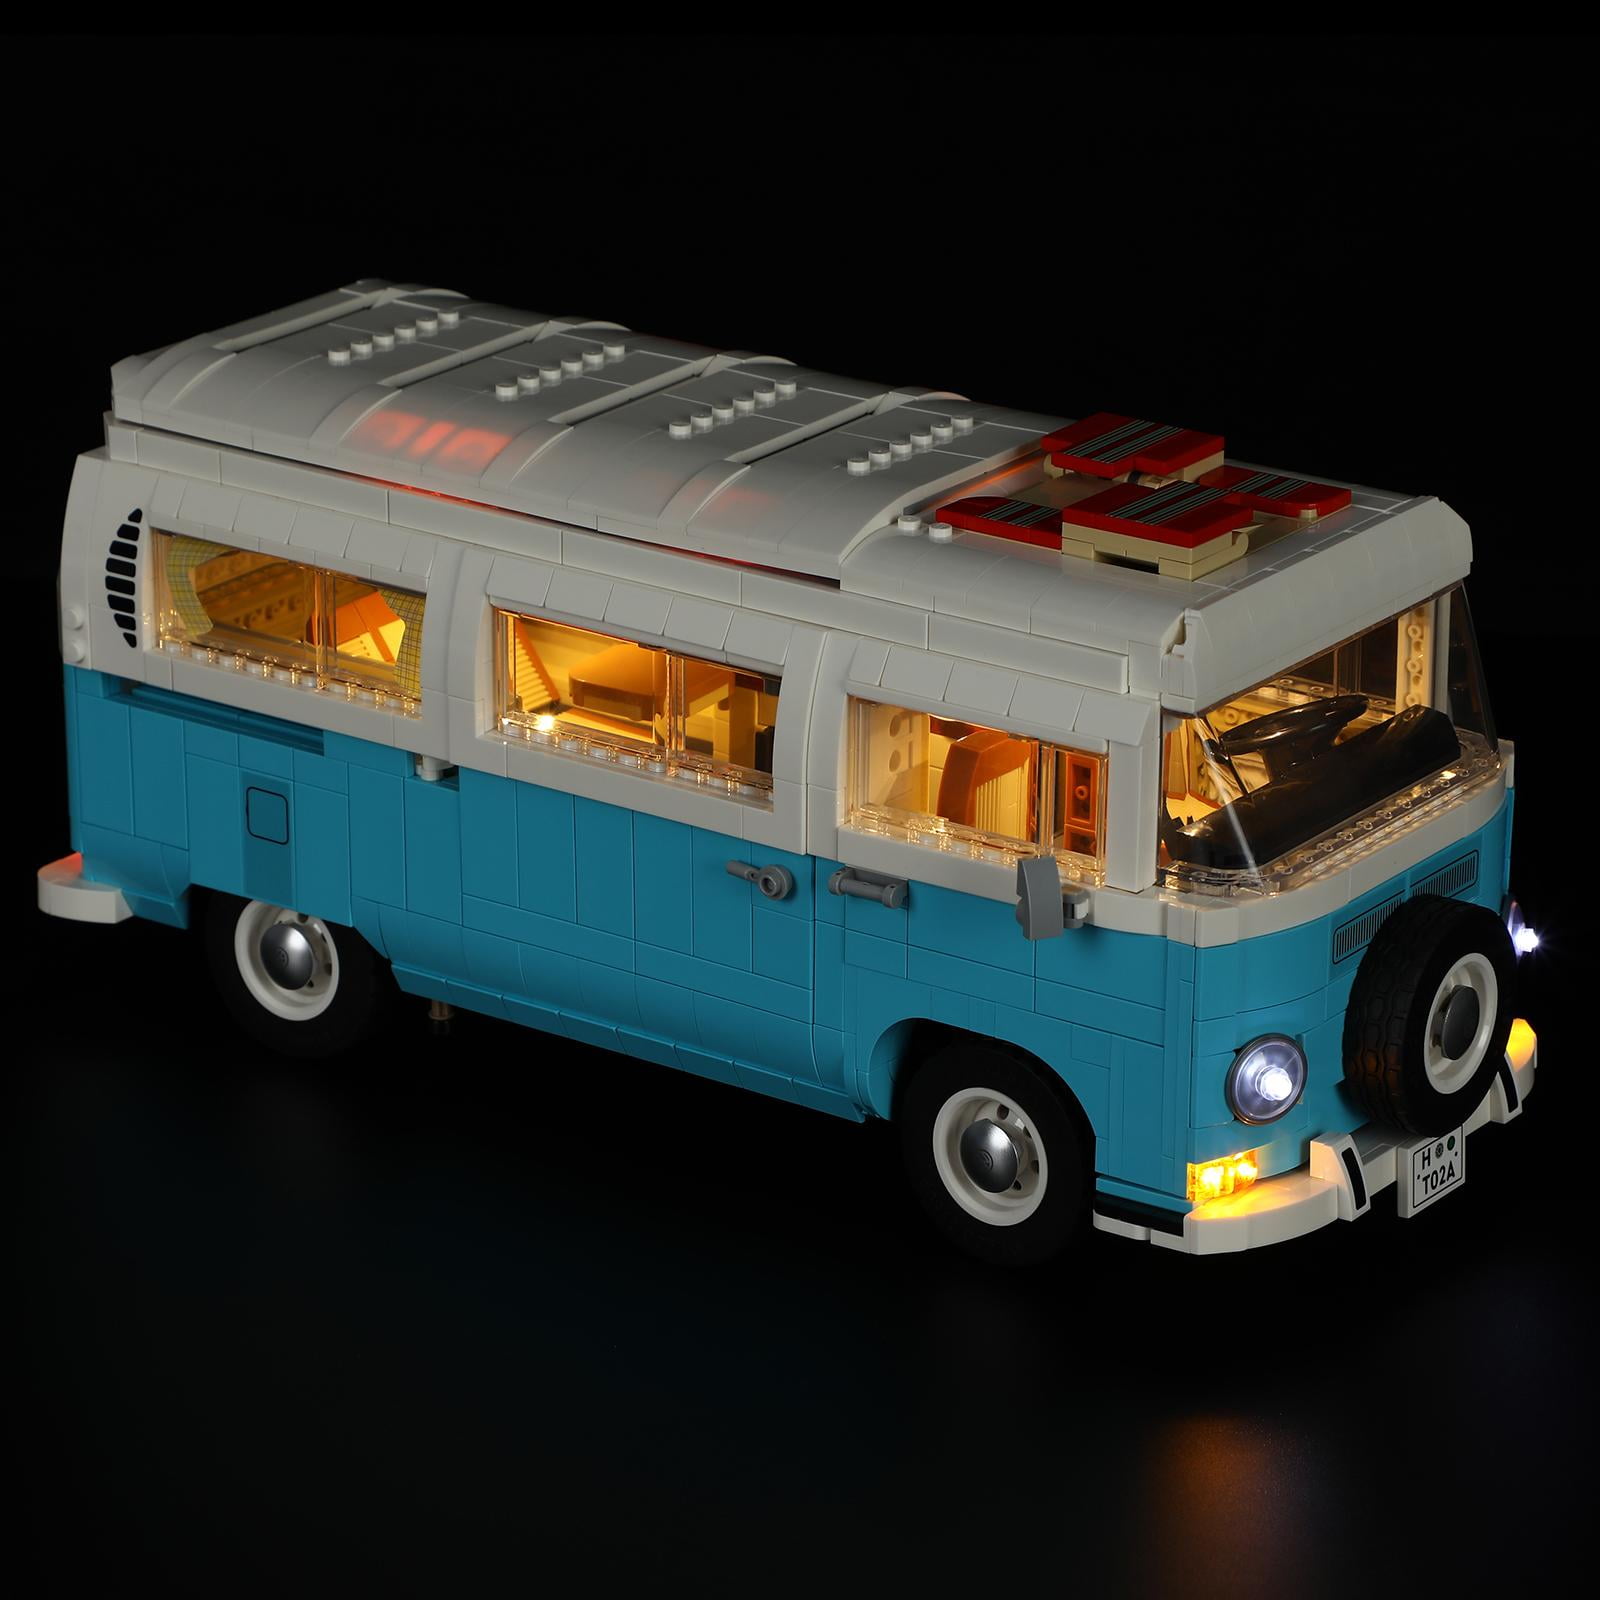 LIGHTAILING Led Lighting Set for Volkswagen T2 Camper Van Building Blocks  Model, Light Kit Compatible with Legos 10279 (Not Include the Building Set)  